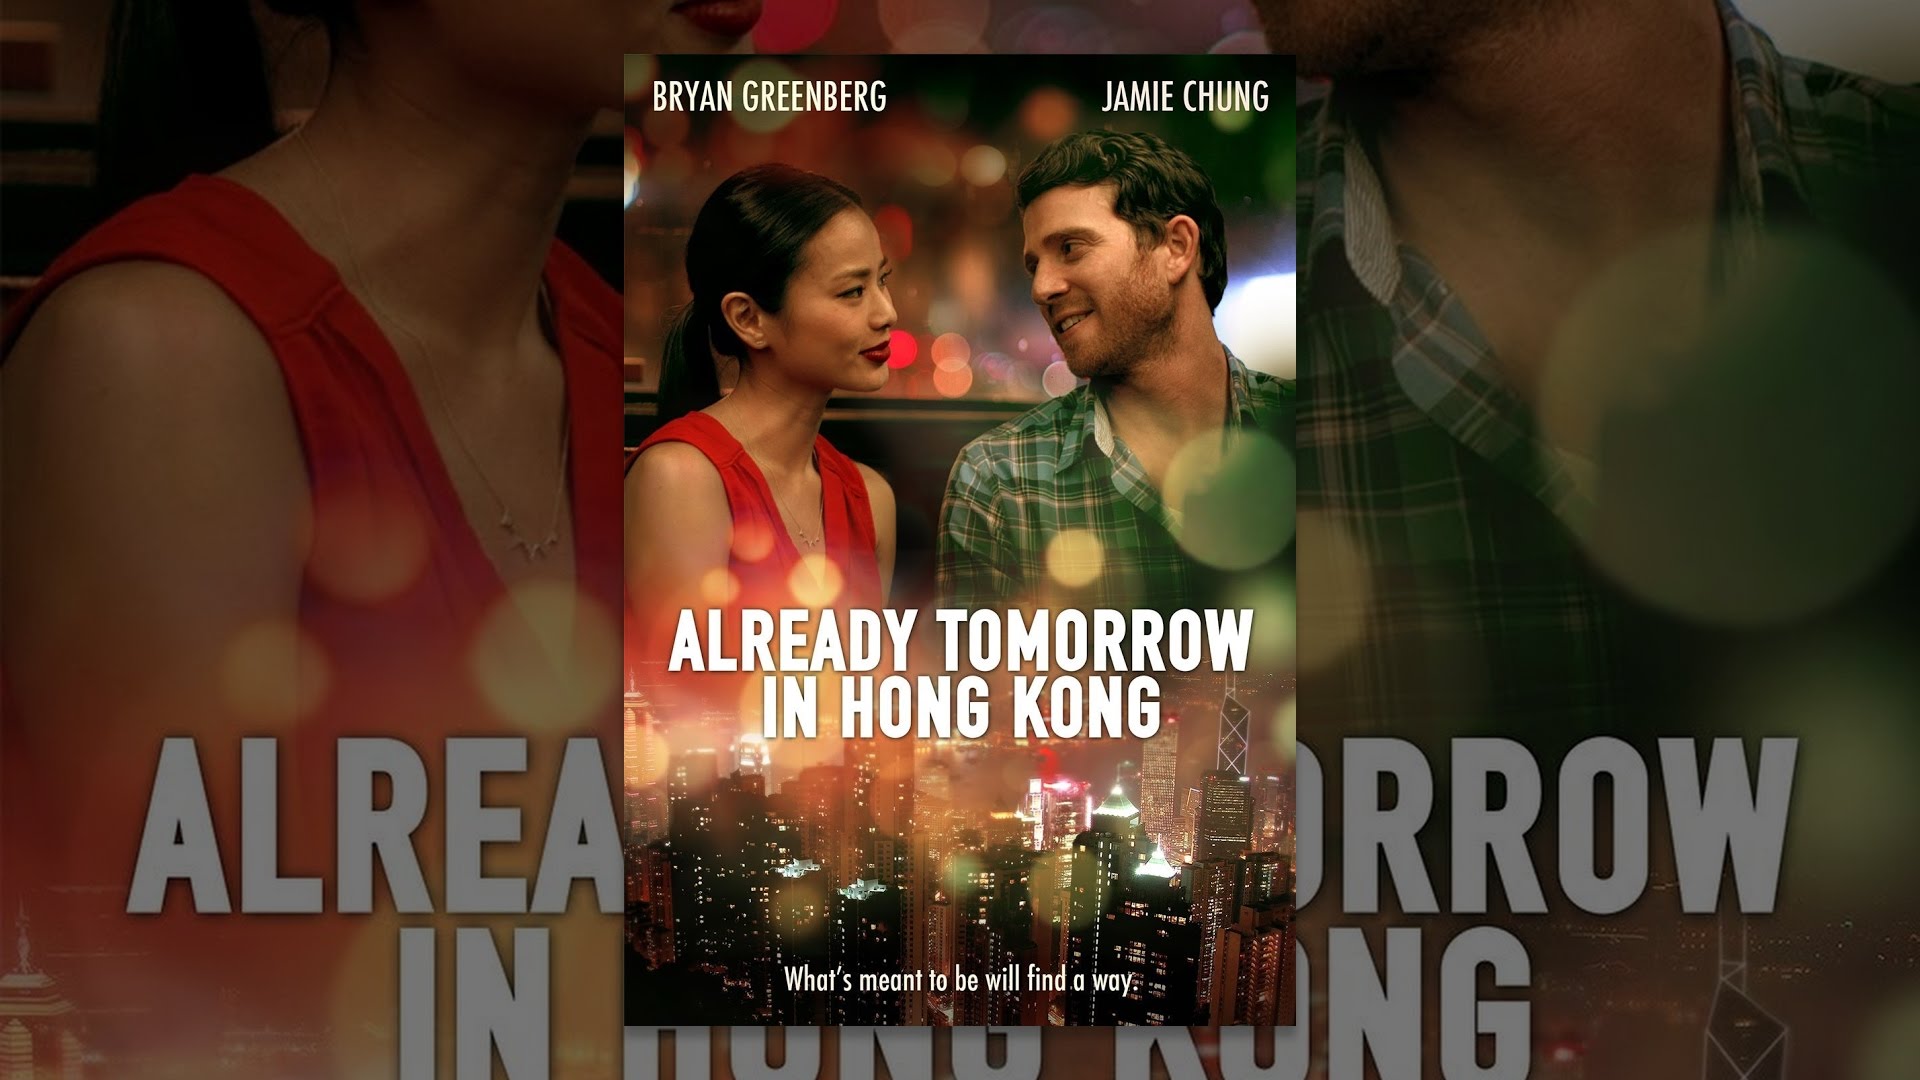 already tomorrow in hong kong full movie free